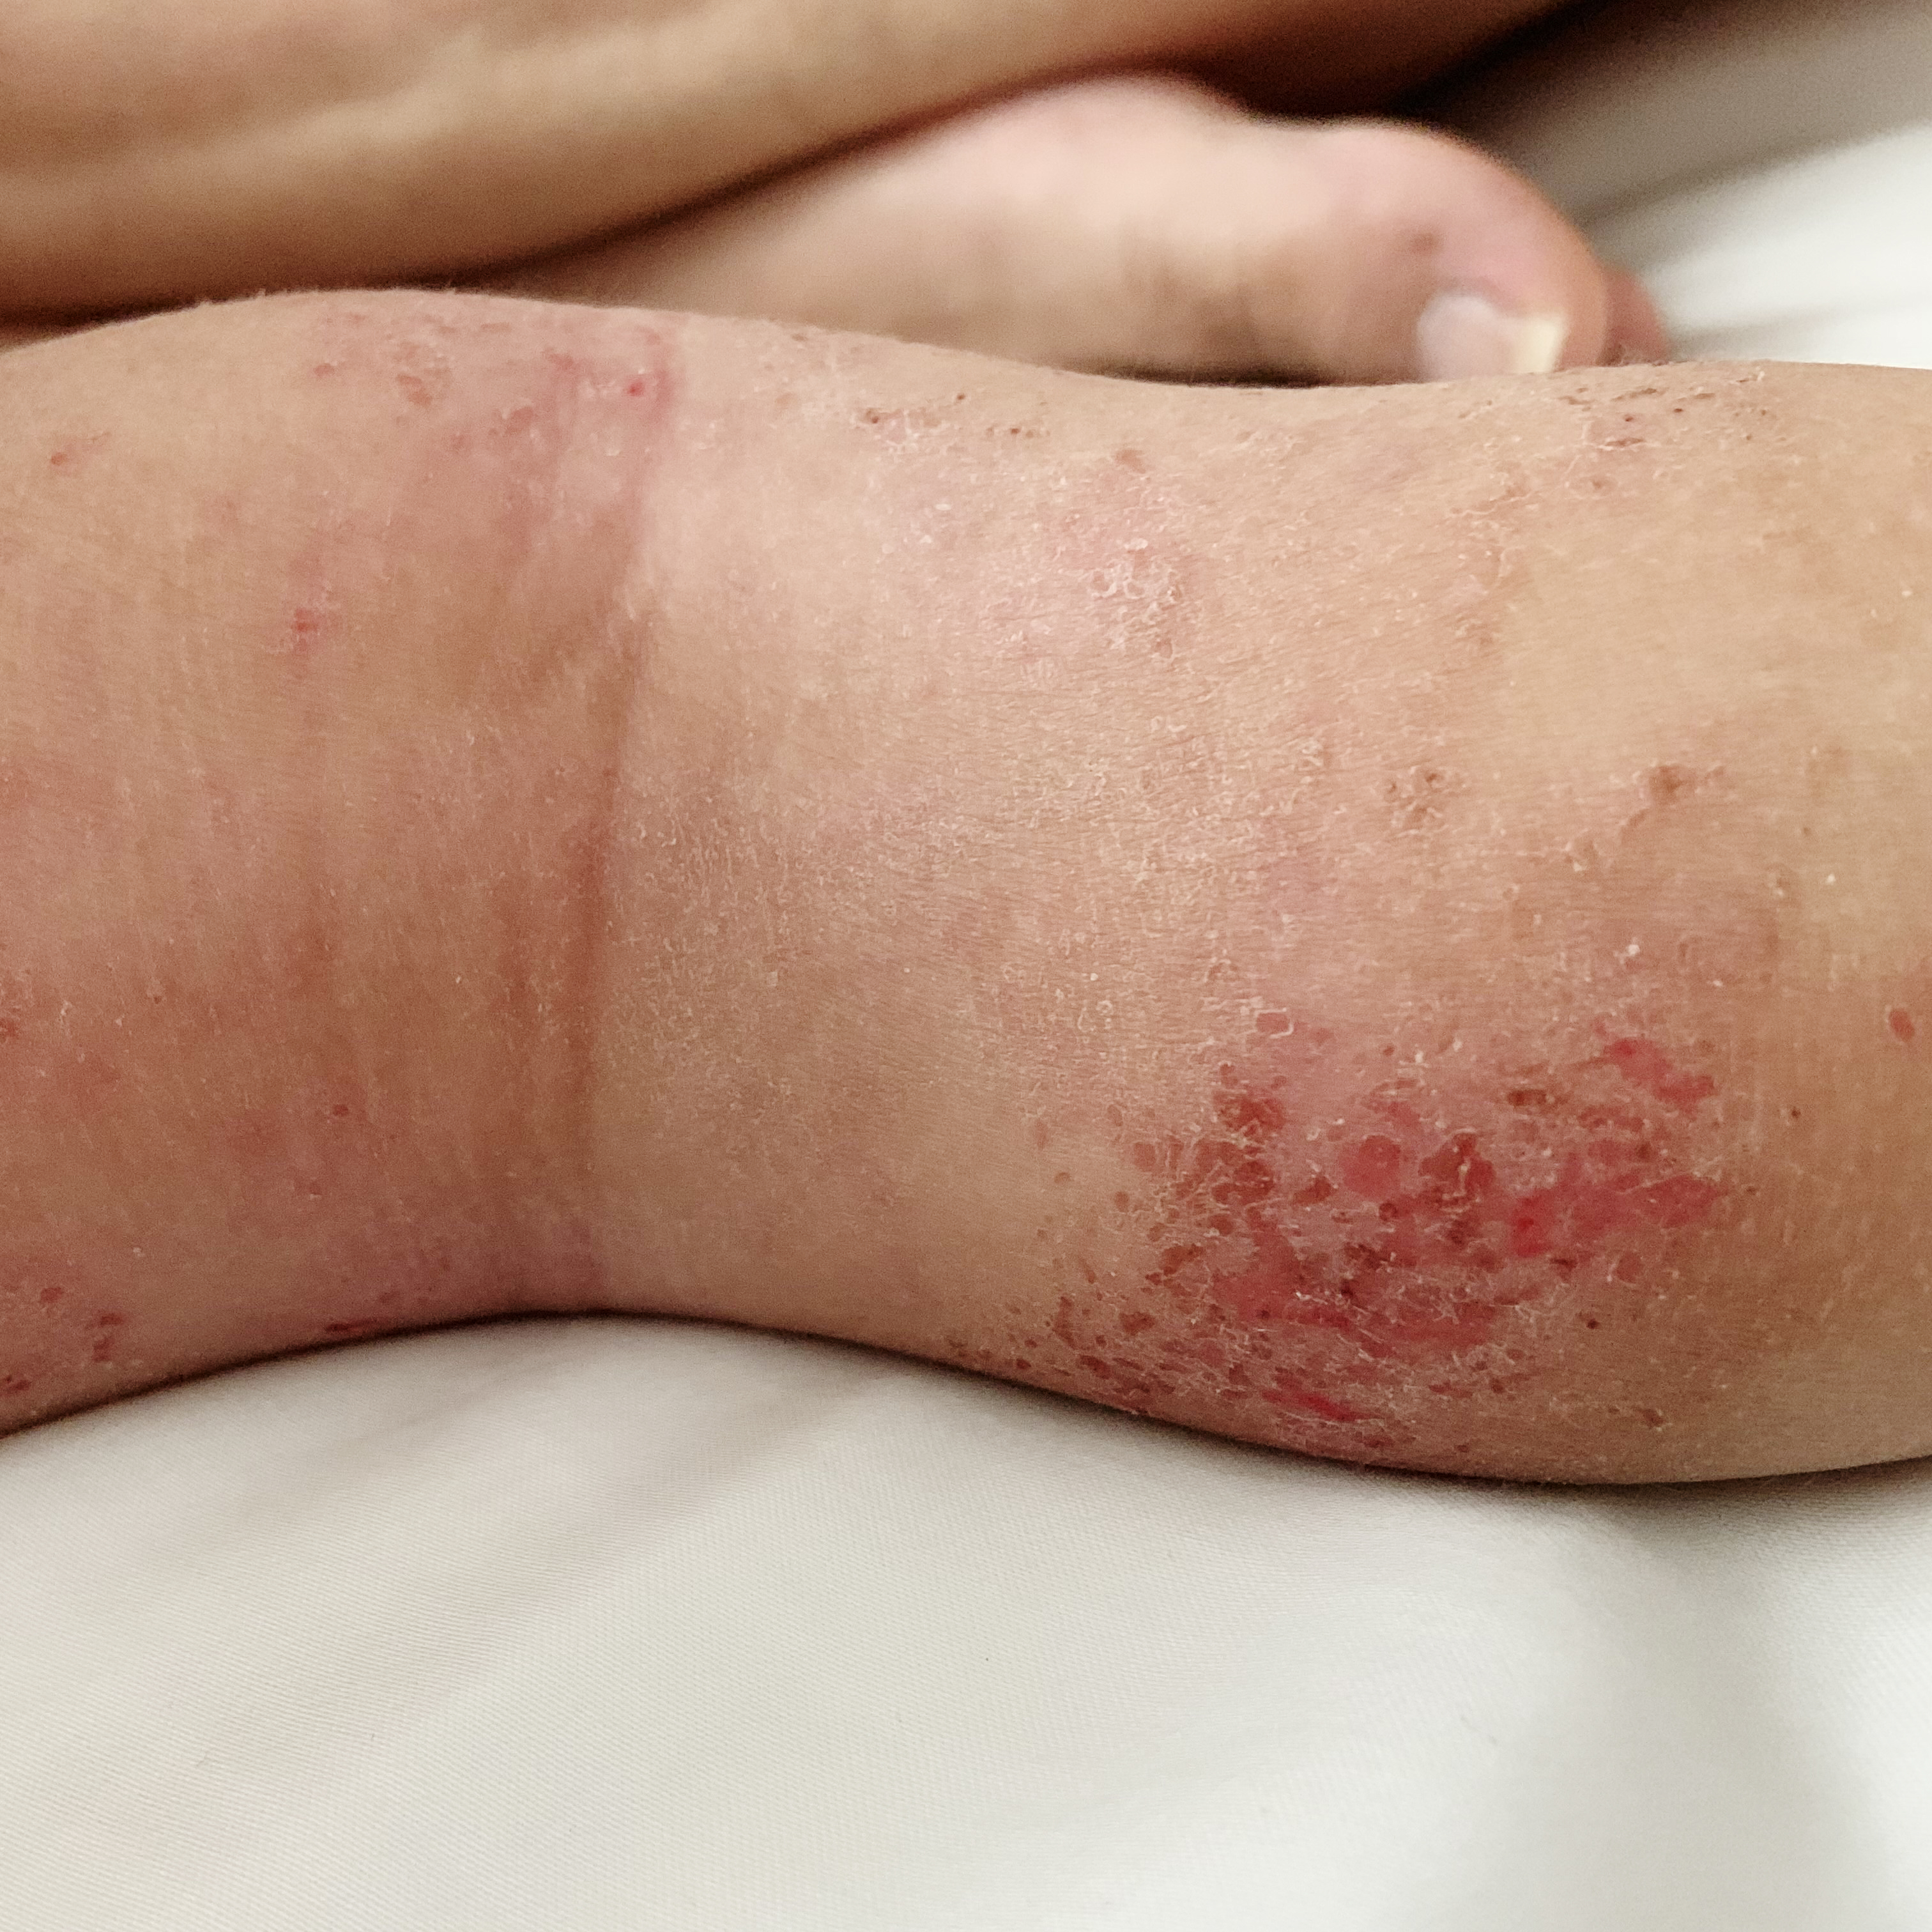 baby eczema on leg